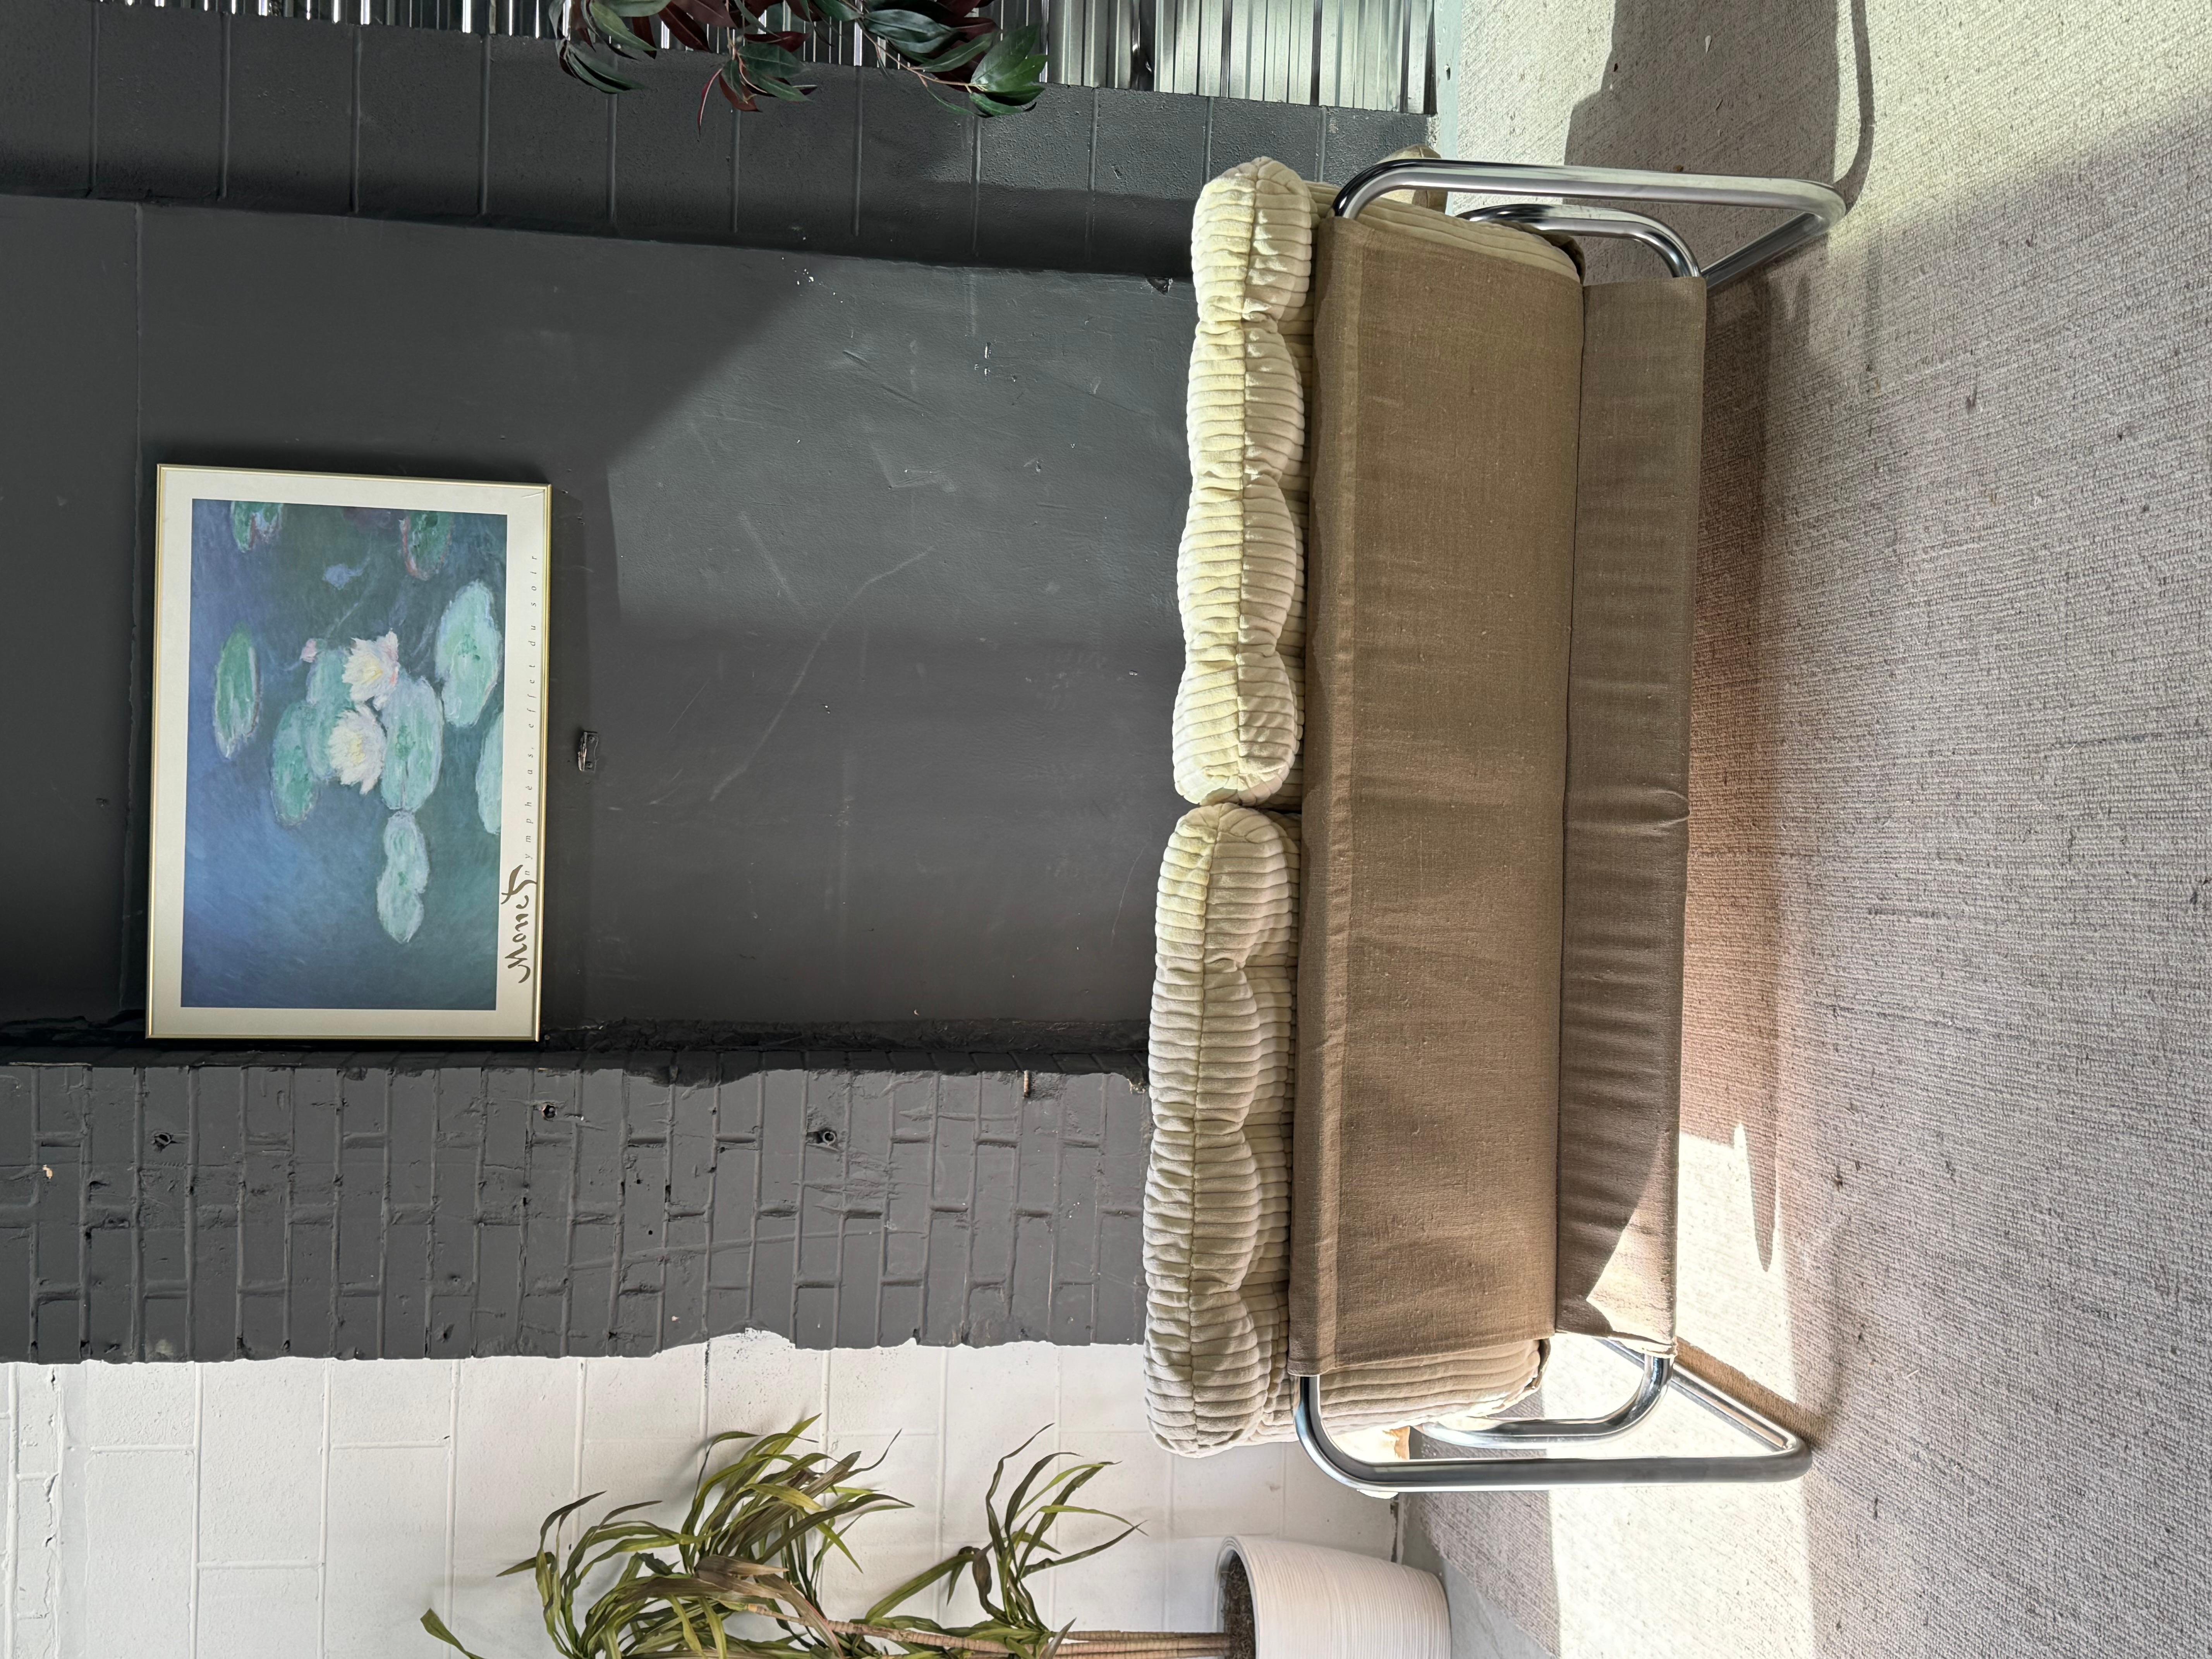 Wunderschönes verchromtes Vintage-Sofa Borkum von Johan Bertil Haggstrom für IKEA. Ein erhabenes, unauffälliges Schmuckstück. Behält die ursprüngliche beigefarbene Leinenschlaufe und gepolsterte Armlehnen. Die Kissen sind frisch gepolstert mit